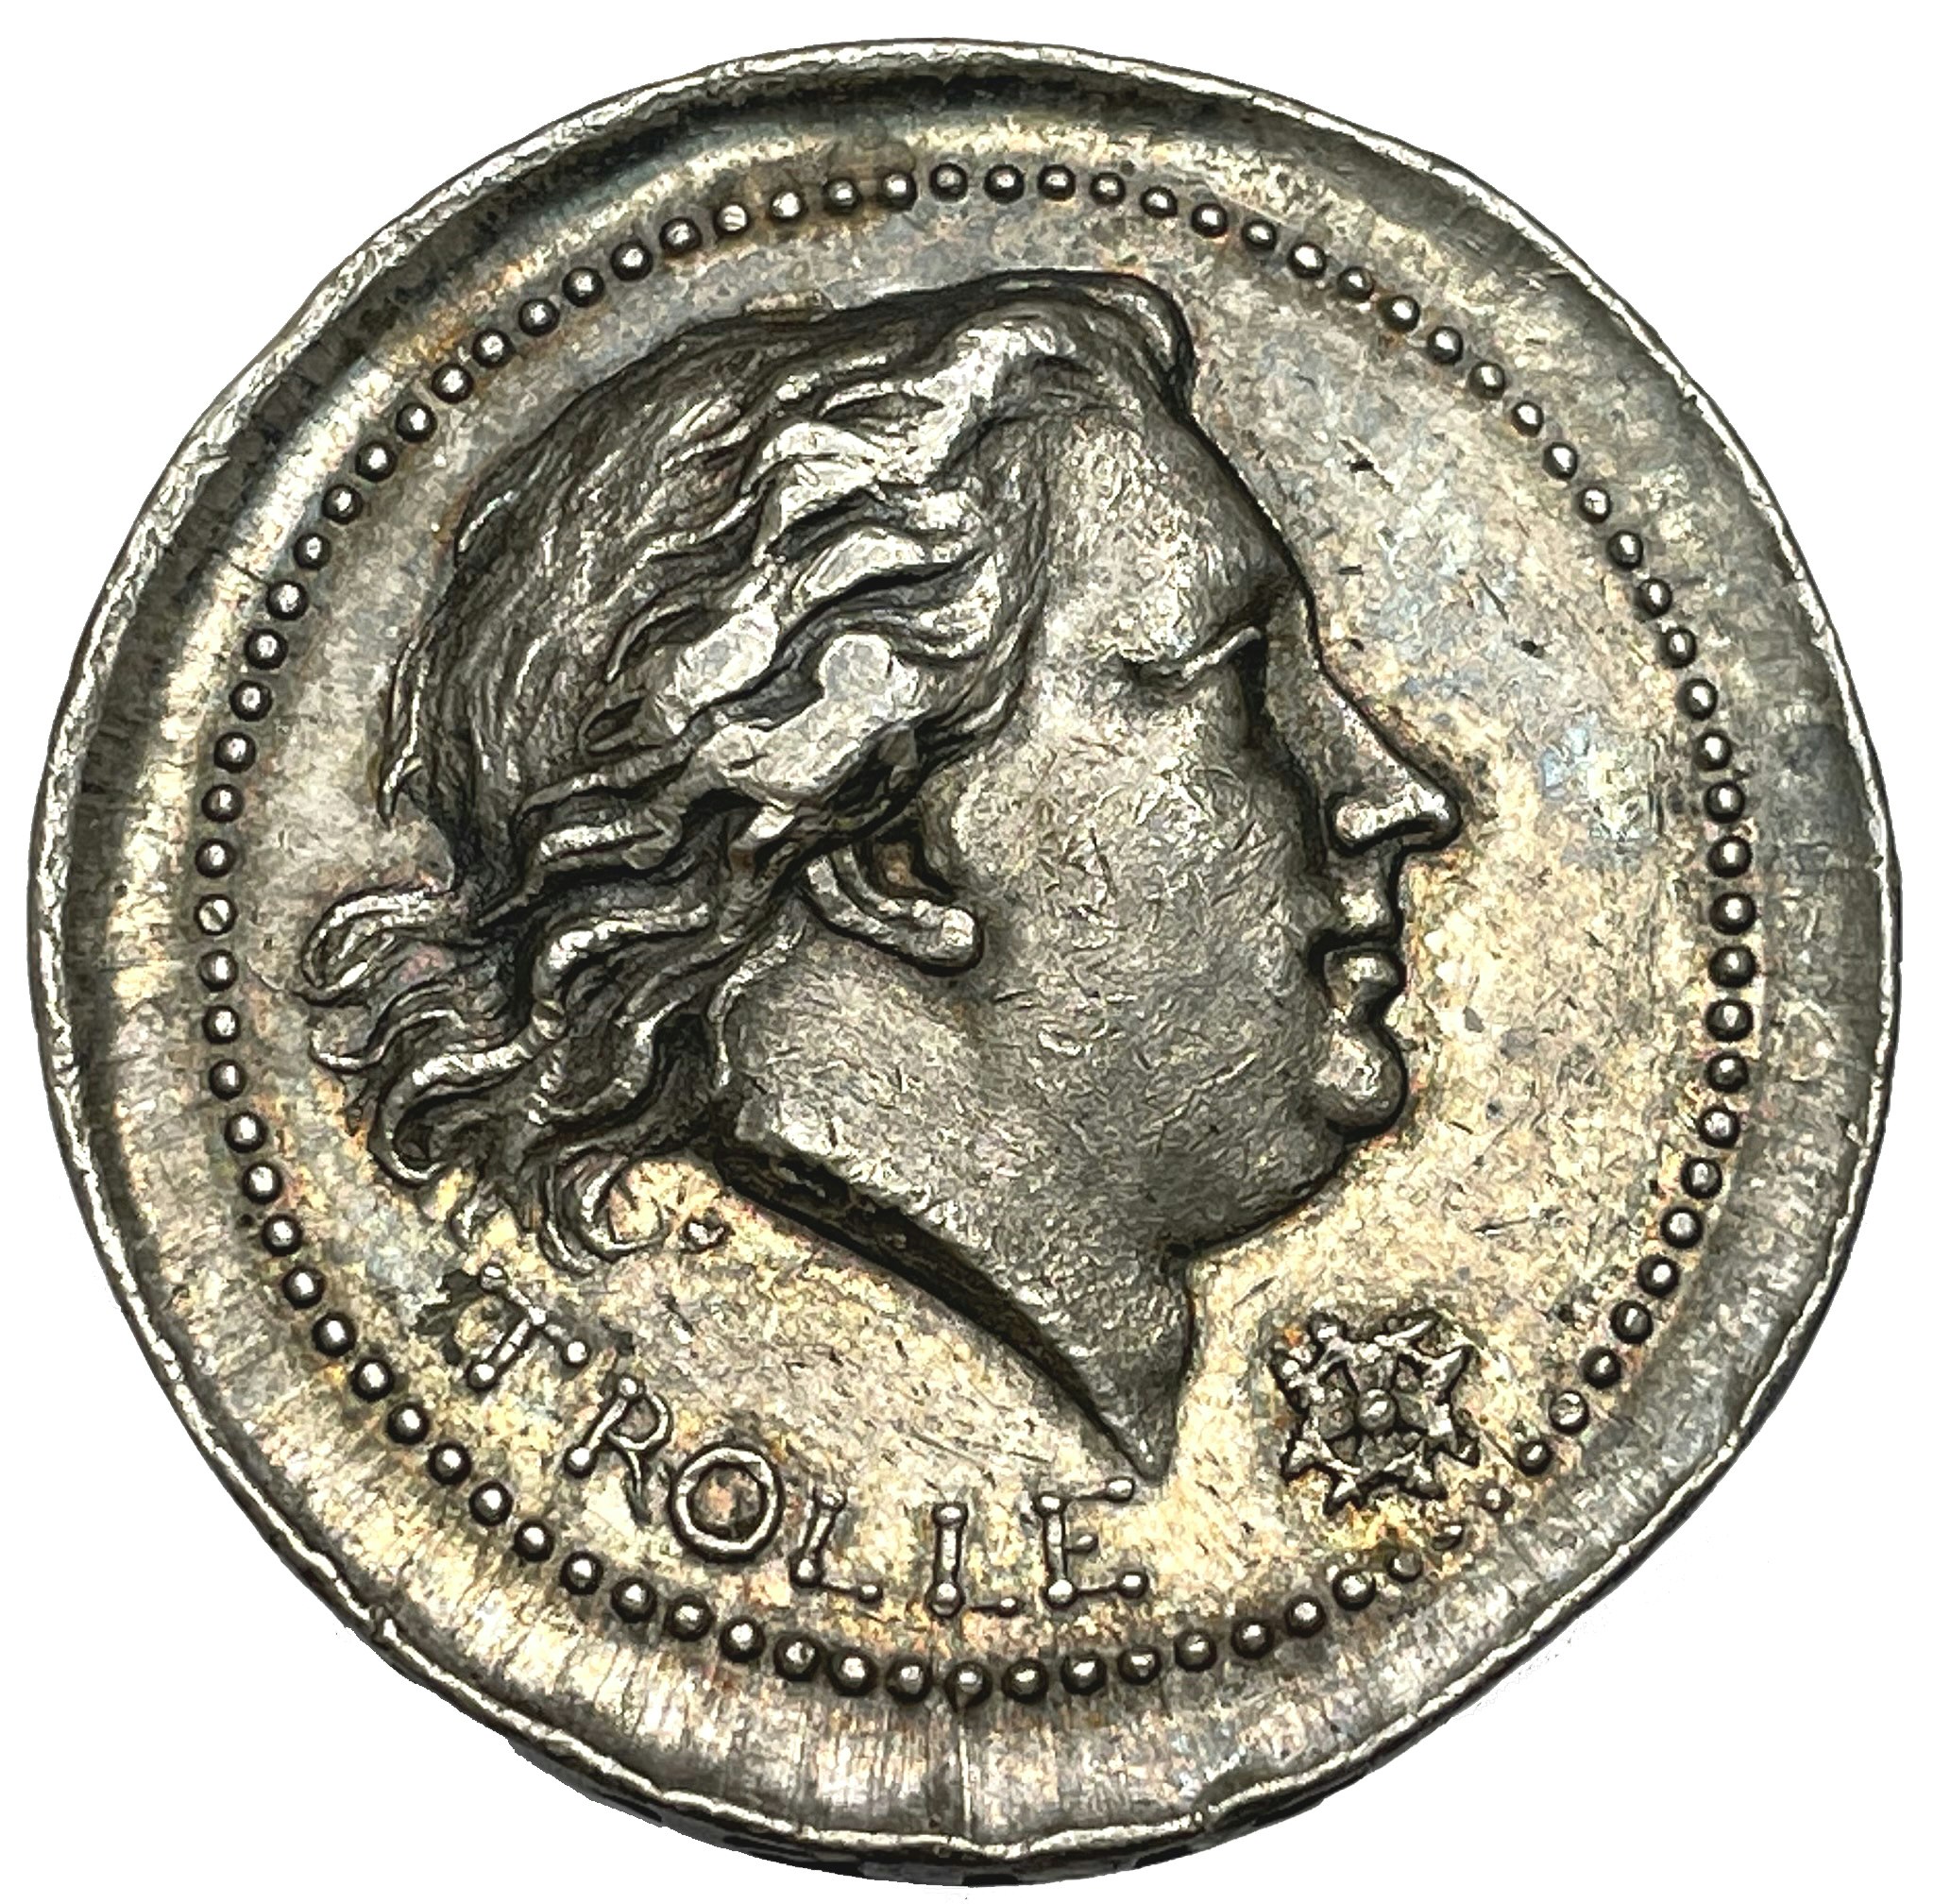 Henrik af Trolle,  (1730-1784) Generalamiral i svenska flottan - minnesmedalj i silver utdelad 1784 till officerarna - MYCKET VACKER OCH MYCKET SÄLLSYNT!